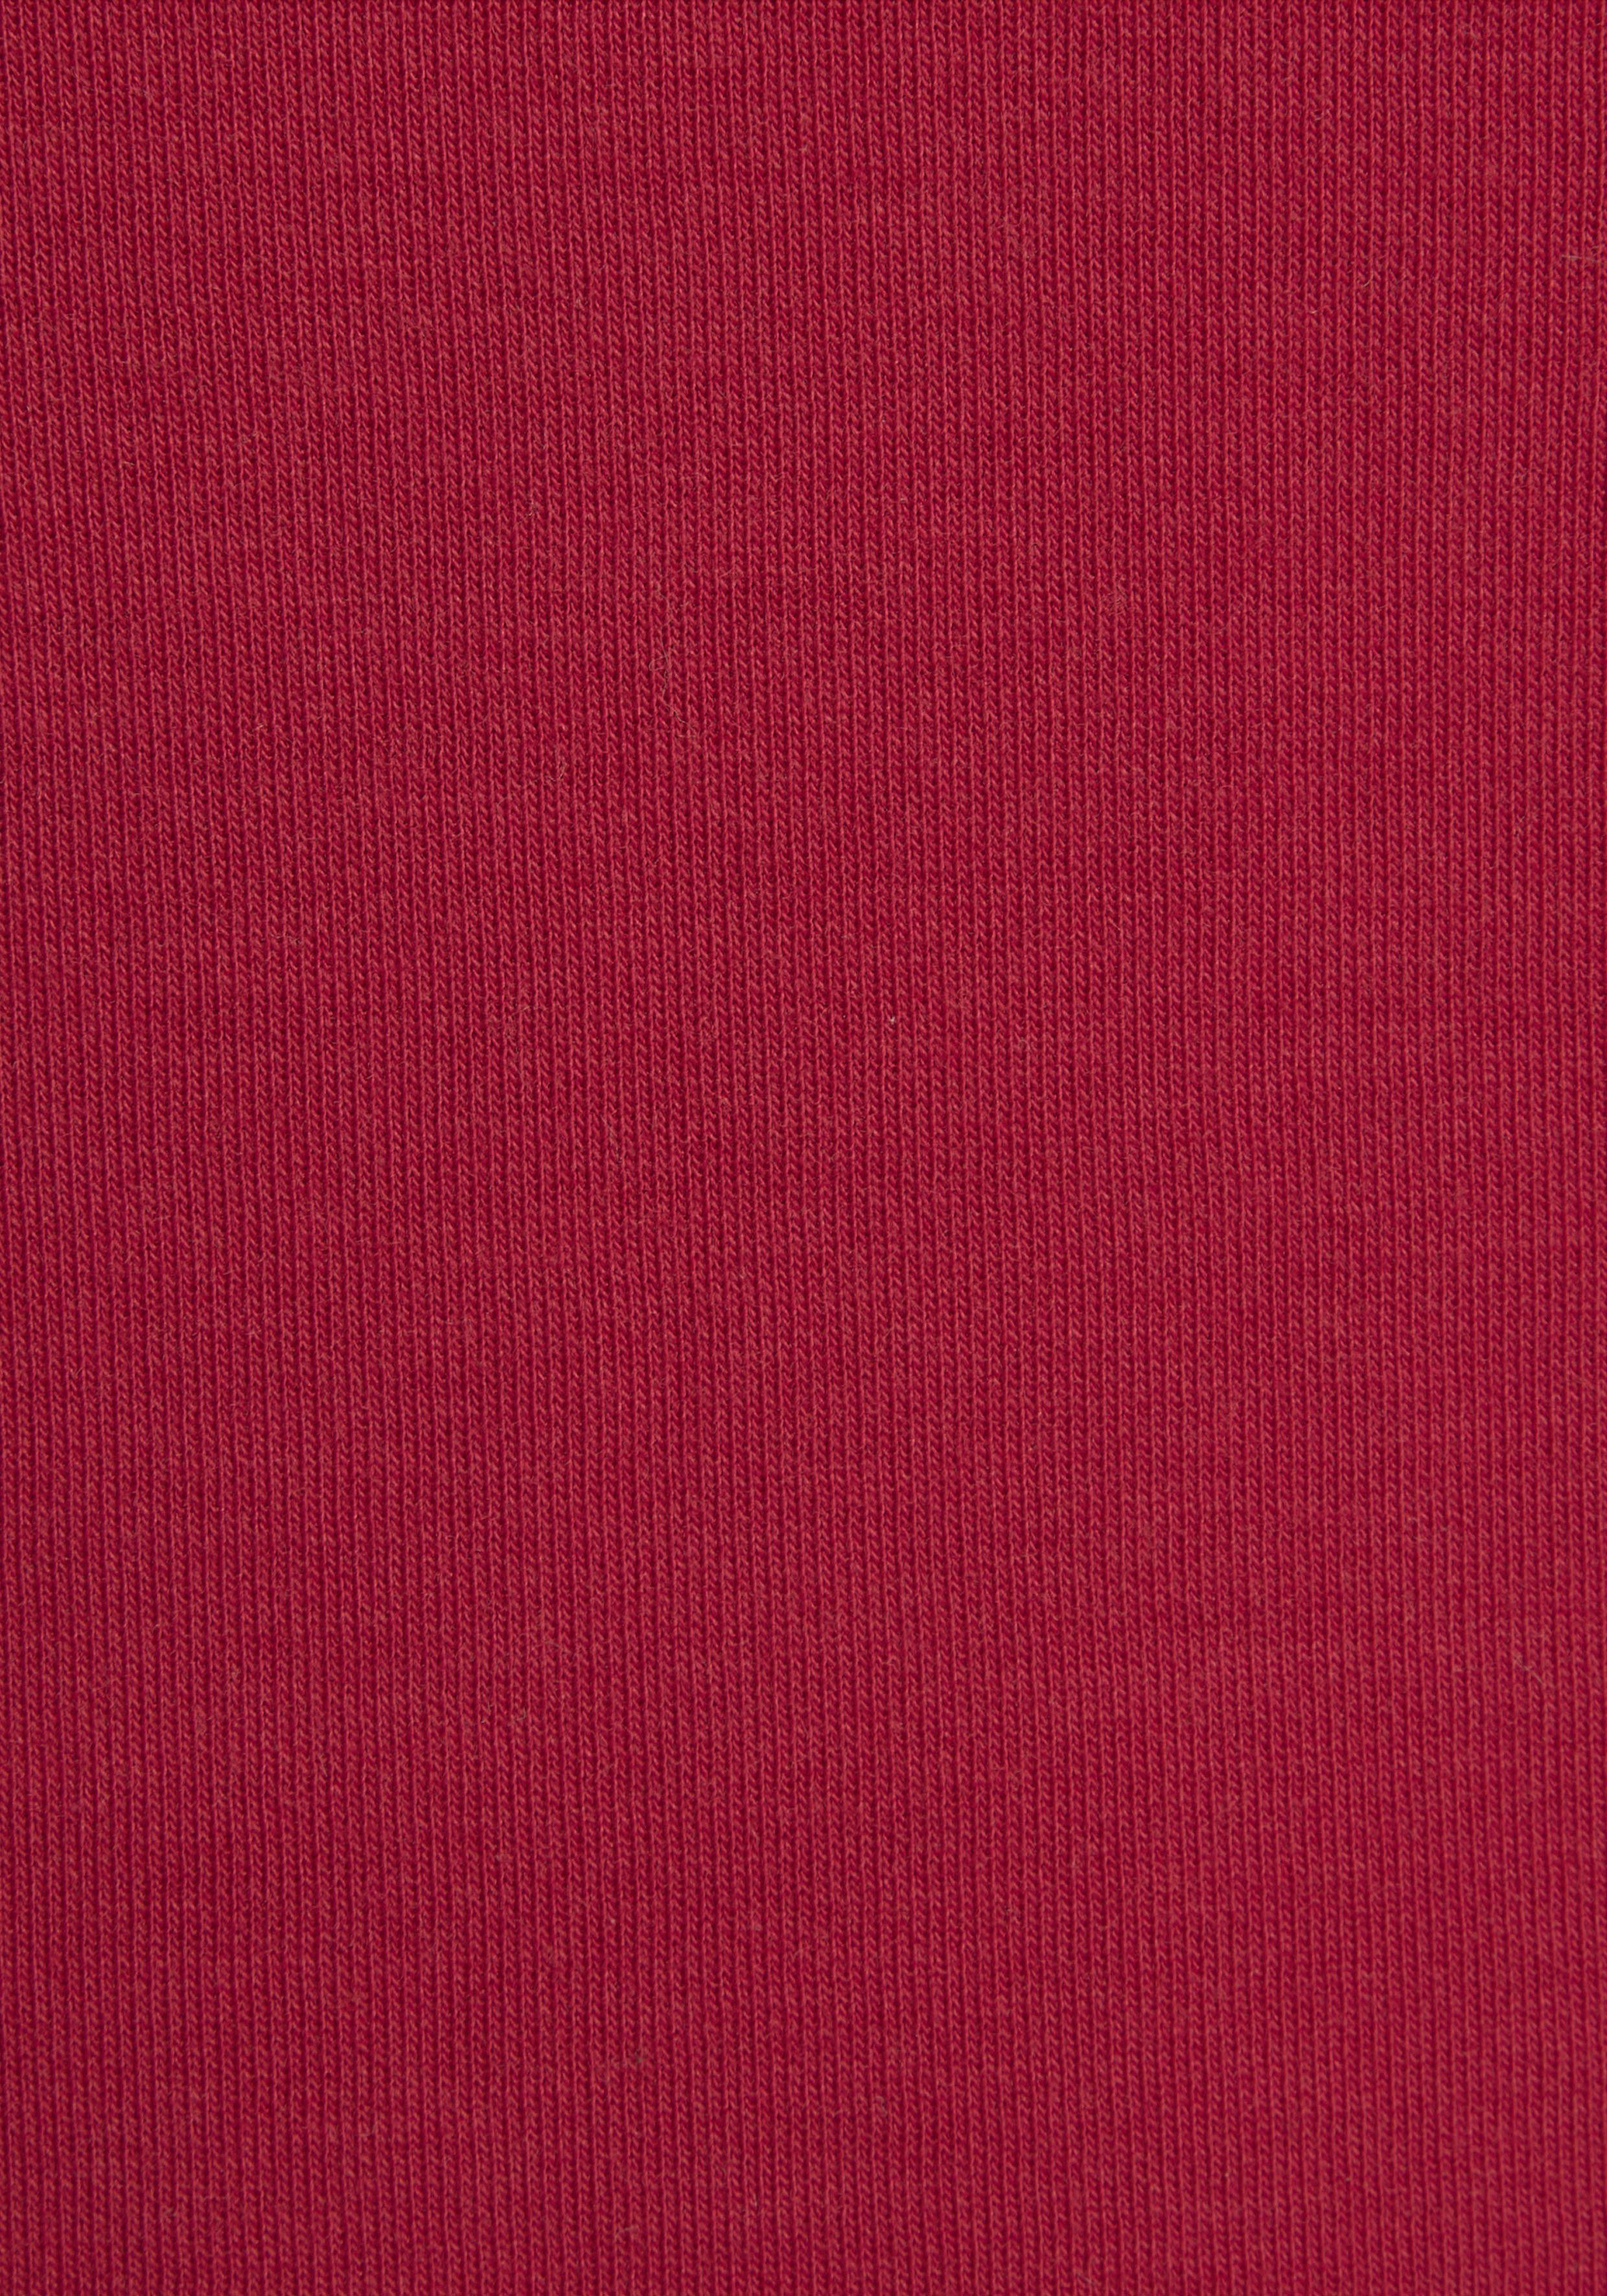 KangaROOS Sweatshirt mit Kontrastfarbenem Logodruck, rot Loungeanzug